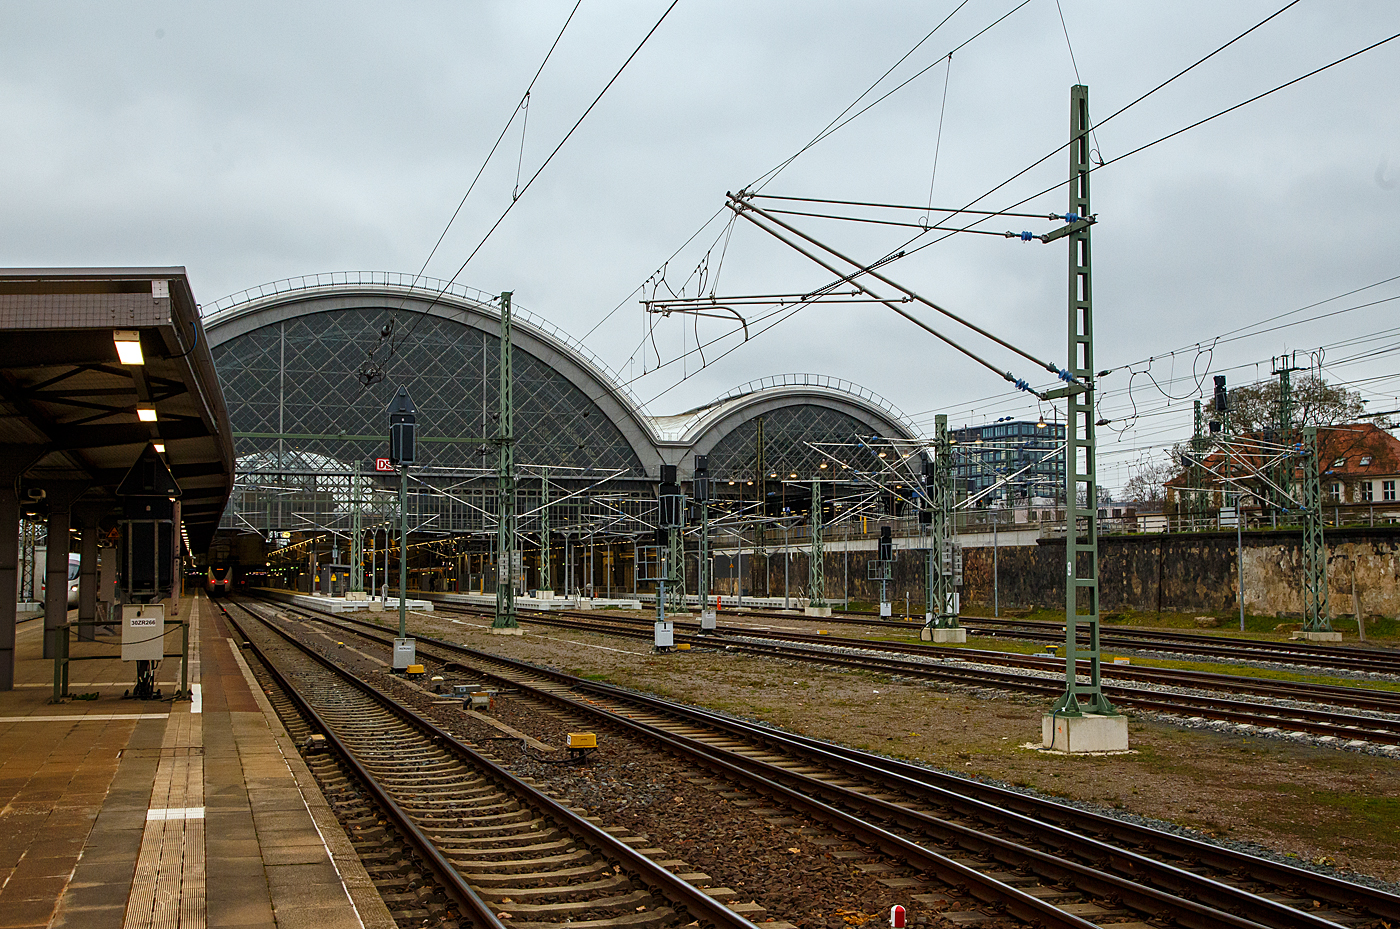 Der Hauptbahnhof Dresden am 06.12.2022, Blick auf die Westseite (Blickrichtung osten) vom Bahnsteig 10/11, links die Mittelhalle und rechts die Sdhalle.

Bahnsteige
Das Mittelschiff bildet heute einen Kopfbahnhof mit sieben Gleisen aus Richtung Nordwesten. Die Bahnsteiggleise des Mittelteils liegen ungefhr auf Straenniveau, alle Durchgangsgleise verlaufen in einer zweiten Ebene 4,50 Meter darber.

Die Nord- und Sdhalle beherbergen je drei durchgehende Bahnsteiggleise, die in sdstlicher Richtung ber das Hallenende hinaus reichen. An den Bahnsteigen 1 und 2 werden diese Abschnitte auch als Bahnsteig 1a und 2a bezeichnet. Der Ostbau besa ursprnglich je ein Bahnsteiggleis in Kopflage an seinen ueren Seiten. Heute ist jedoch nur noch Gleis 4 in Nutzung. Sdlich der Sdhalle befinden sich seit der Sanierung im neuen Jahrtausend, zwei durchgehende Gterzuggleise.
